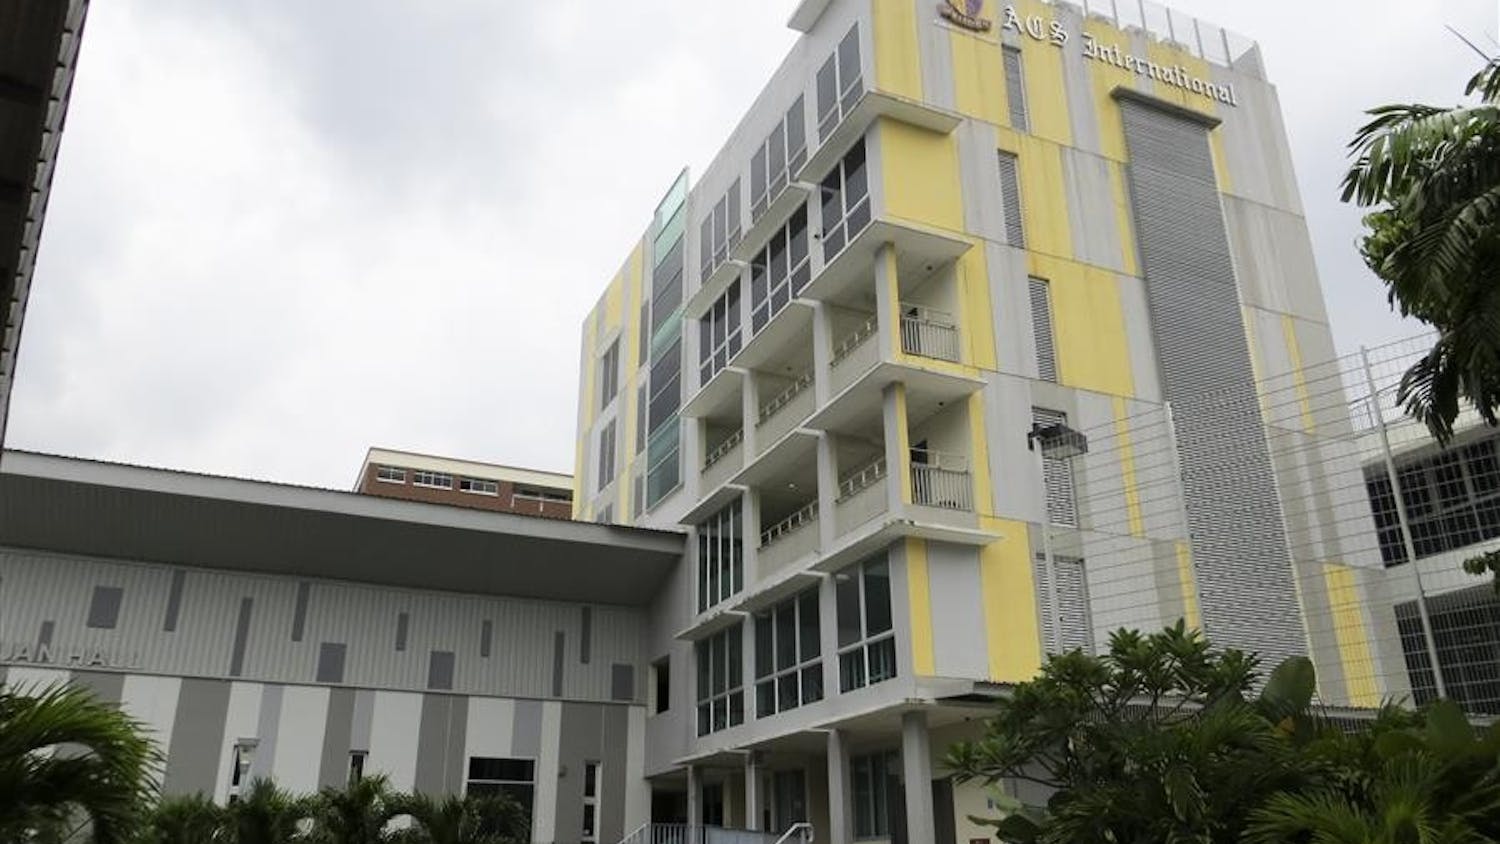 IU to visit eight Singaporean schools